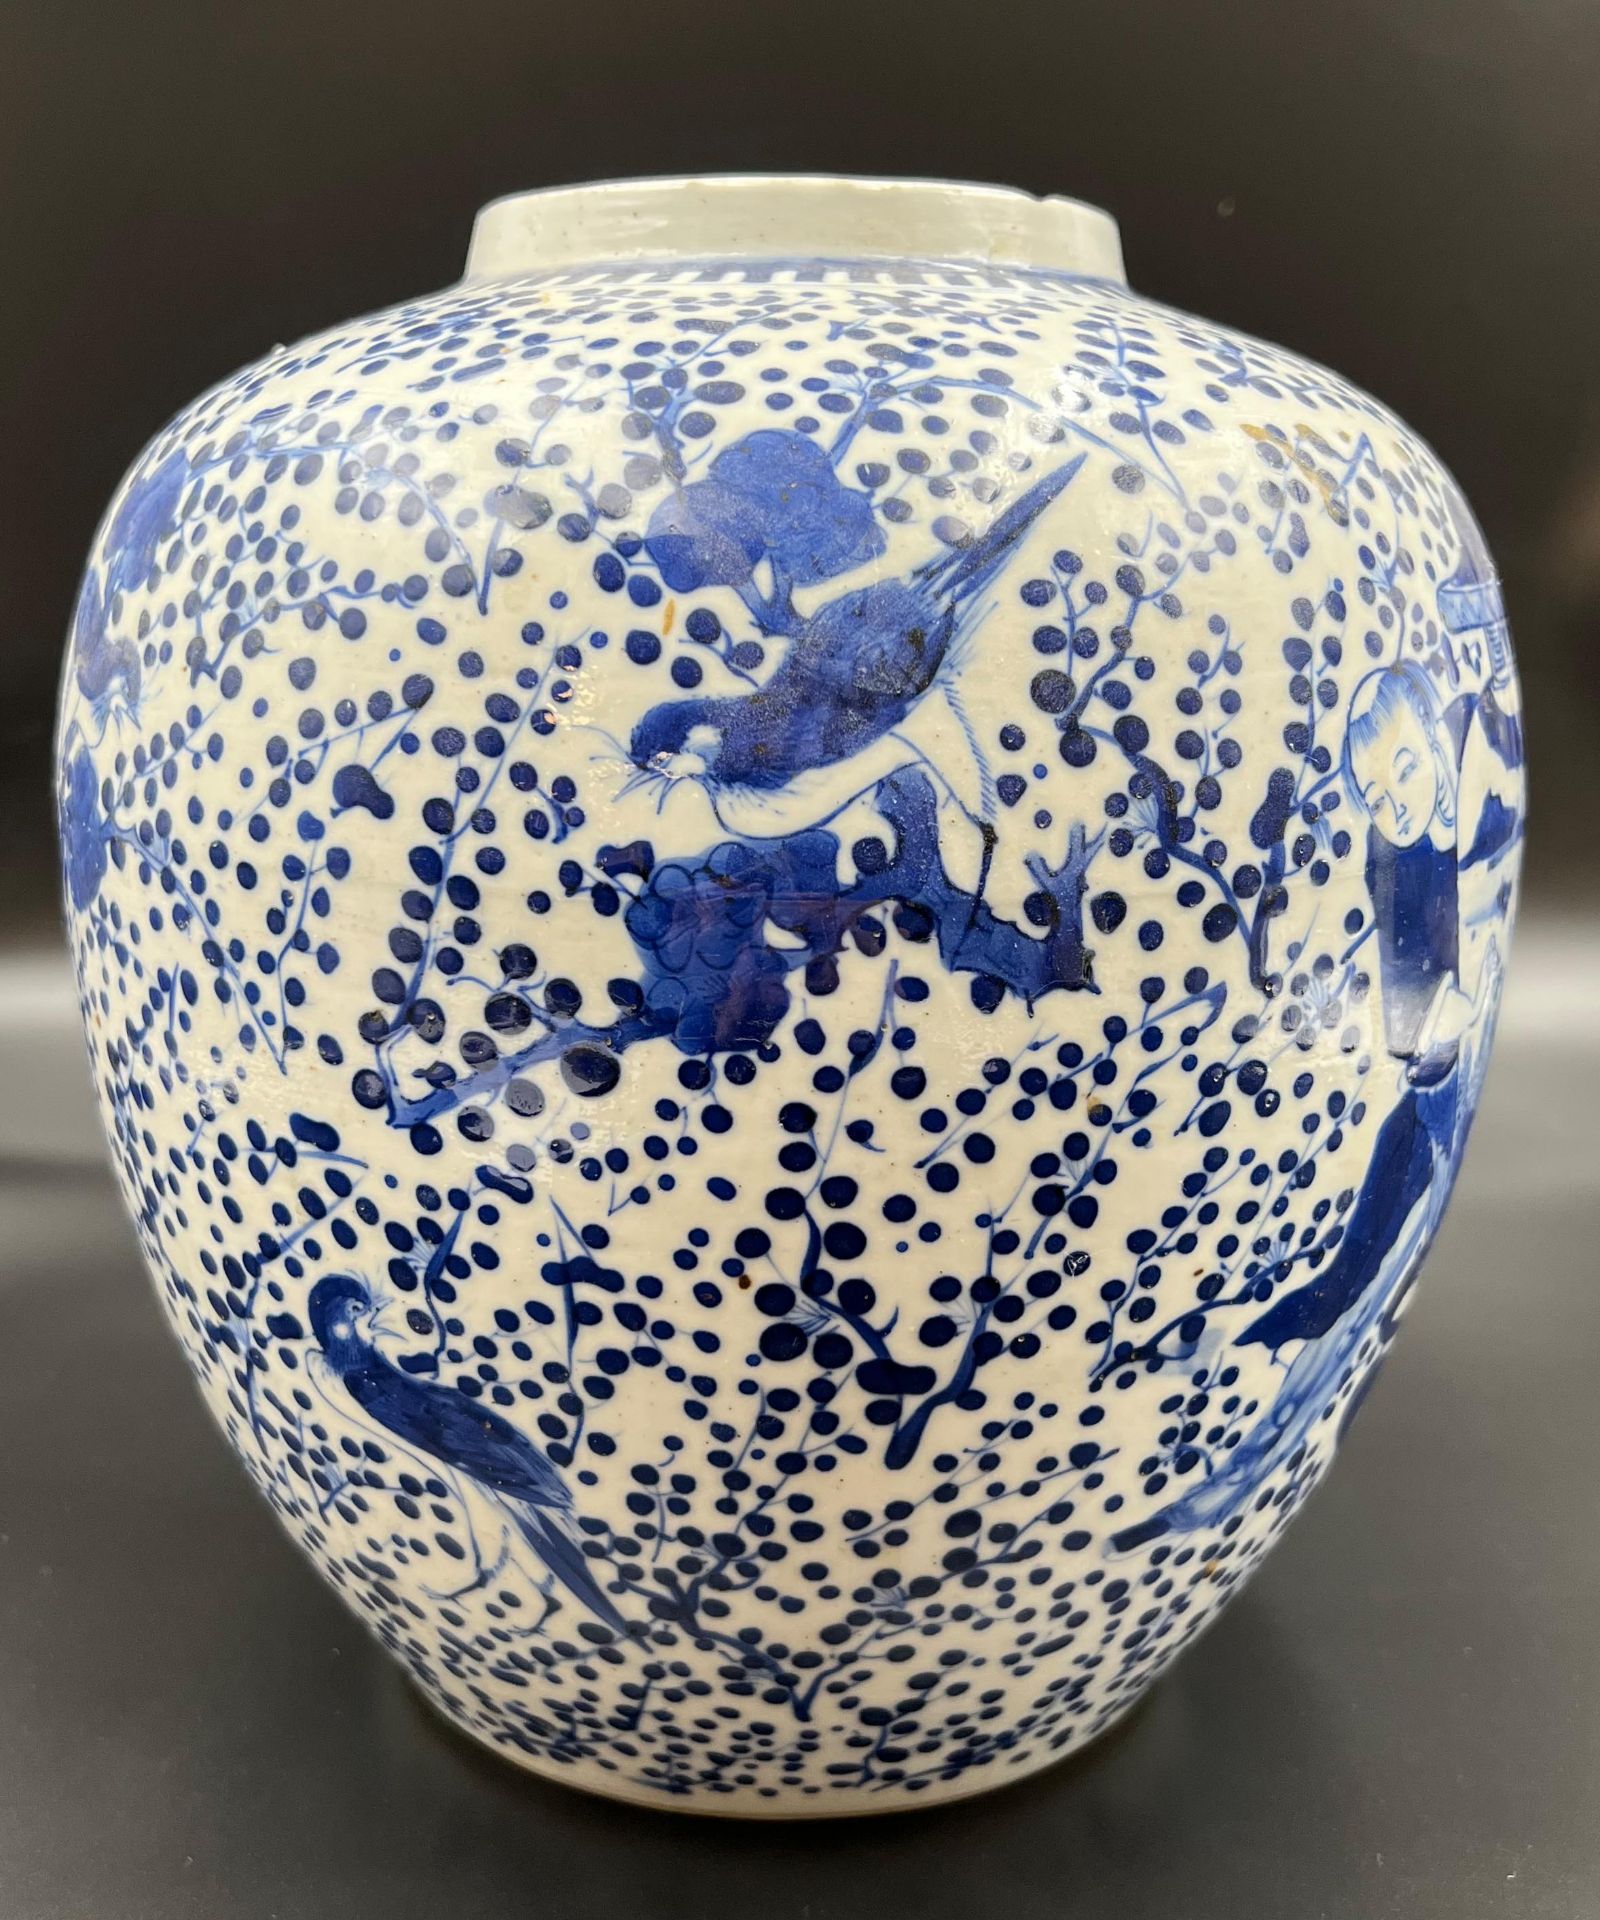 Blau-weiße Porzellan Vase mit He-He Er Xian Dekor. China. 19. Jahrhundert. - Bild 2 aus 12